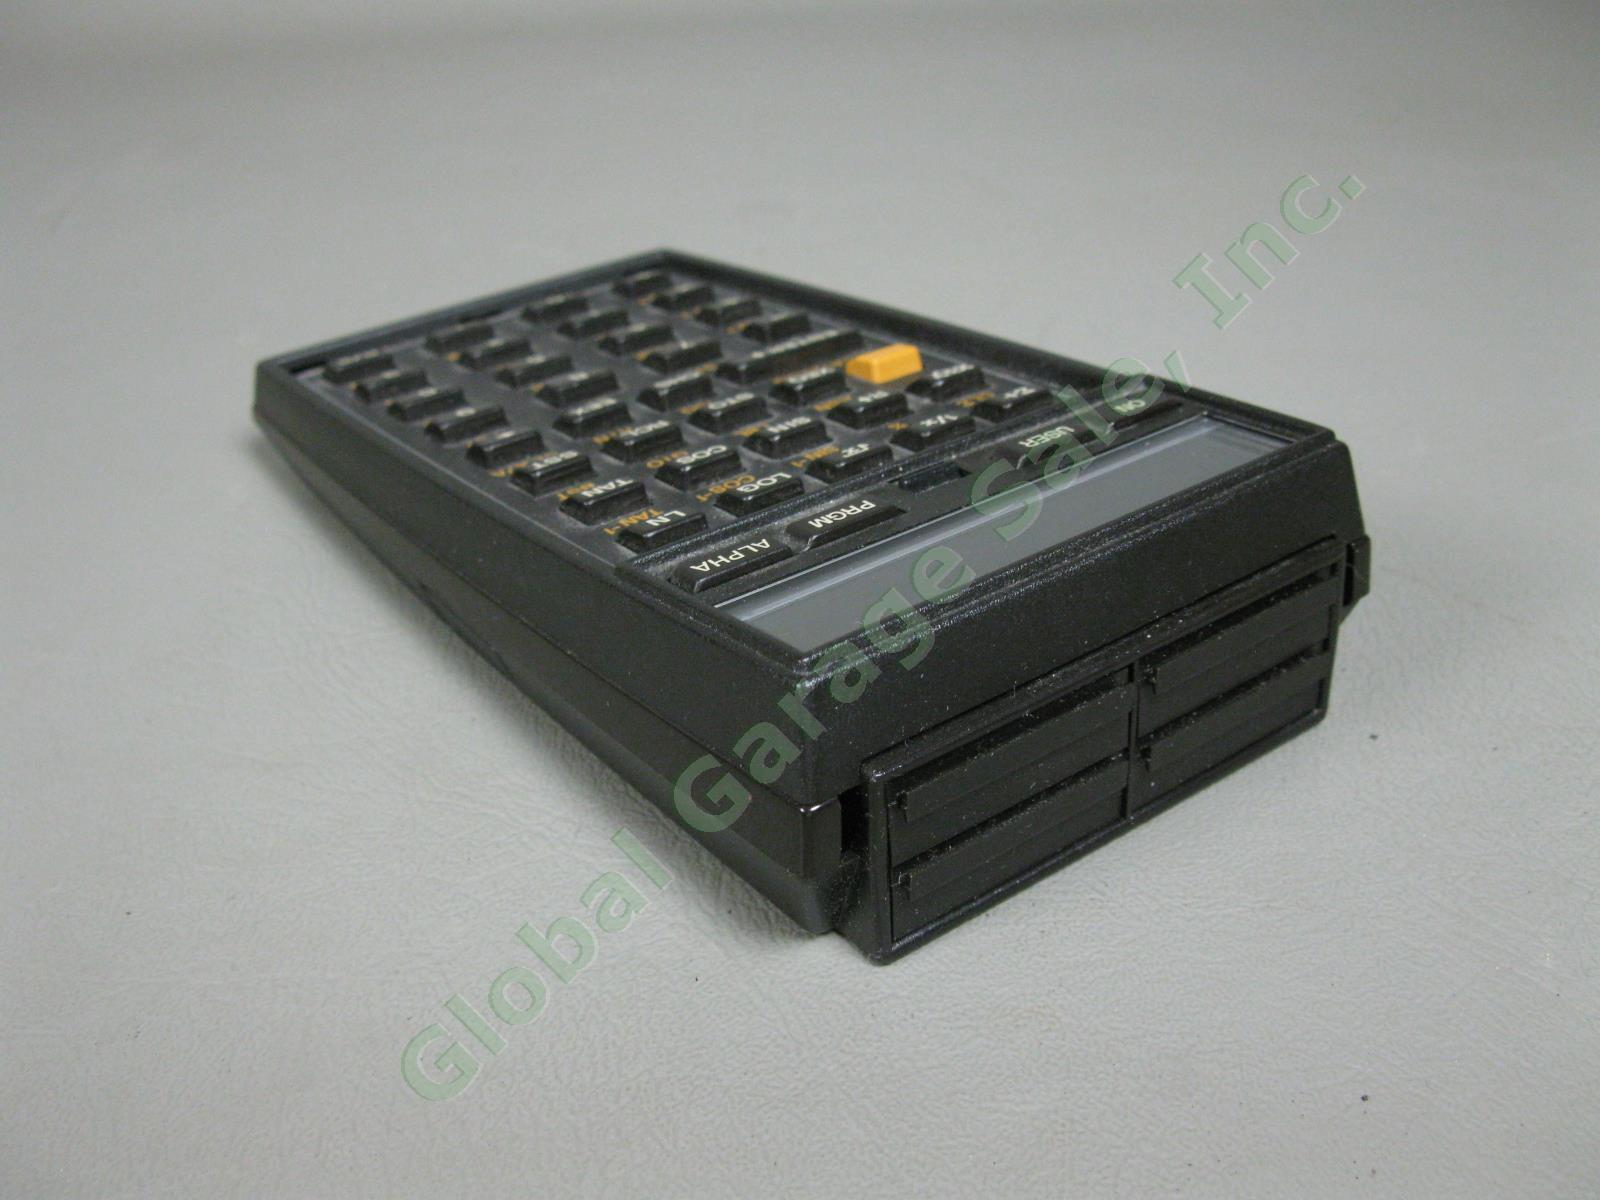 HP-41C Hewlett Packard Scientific System Calculator Exc Cond w/ Original Case NR 5